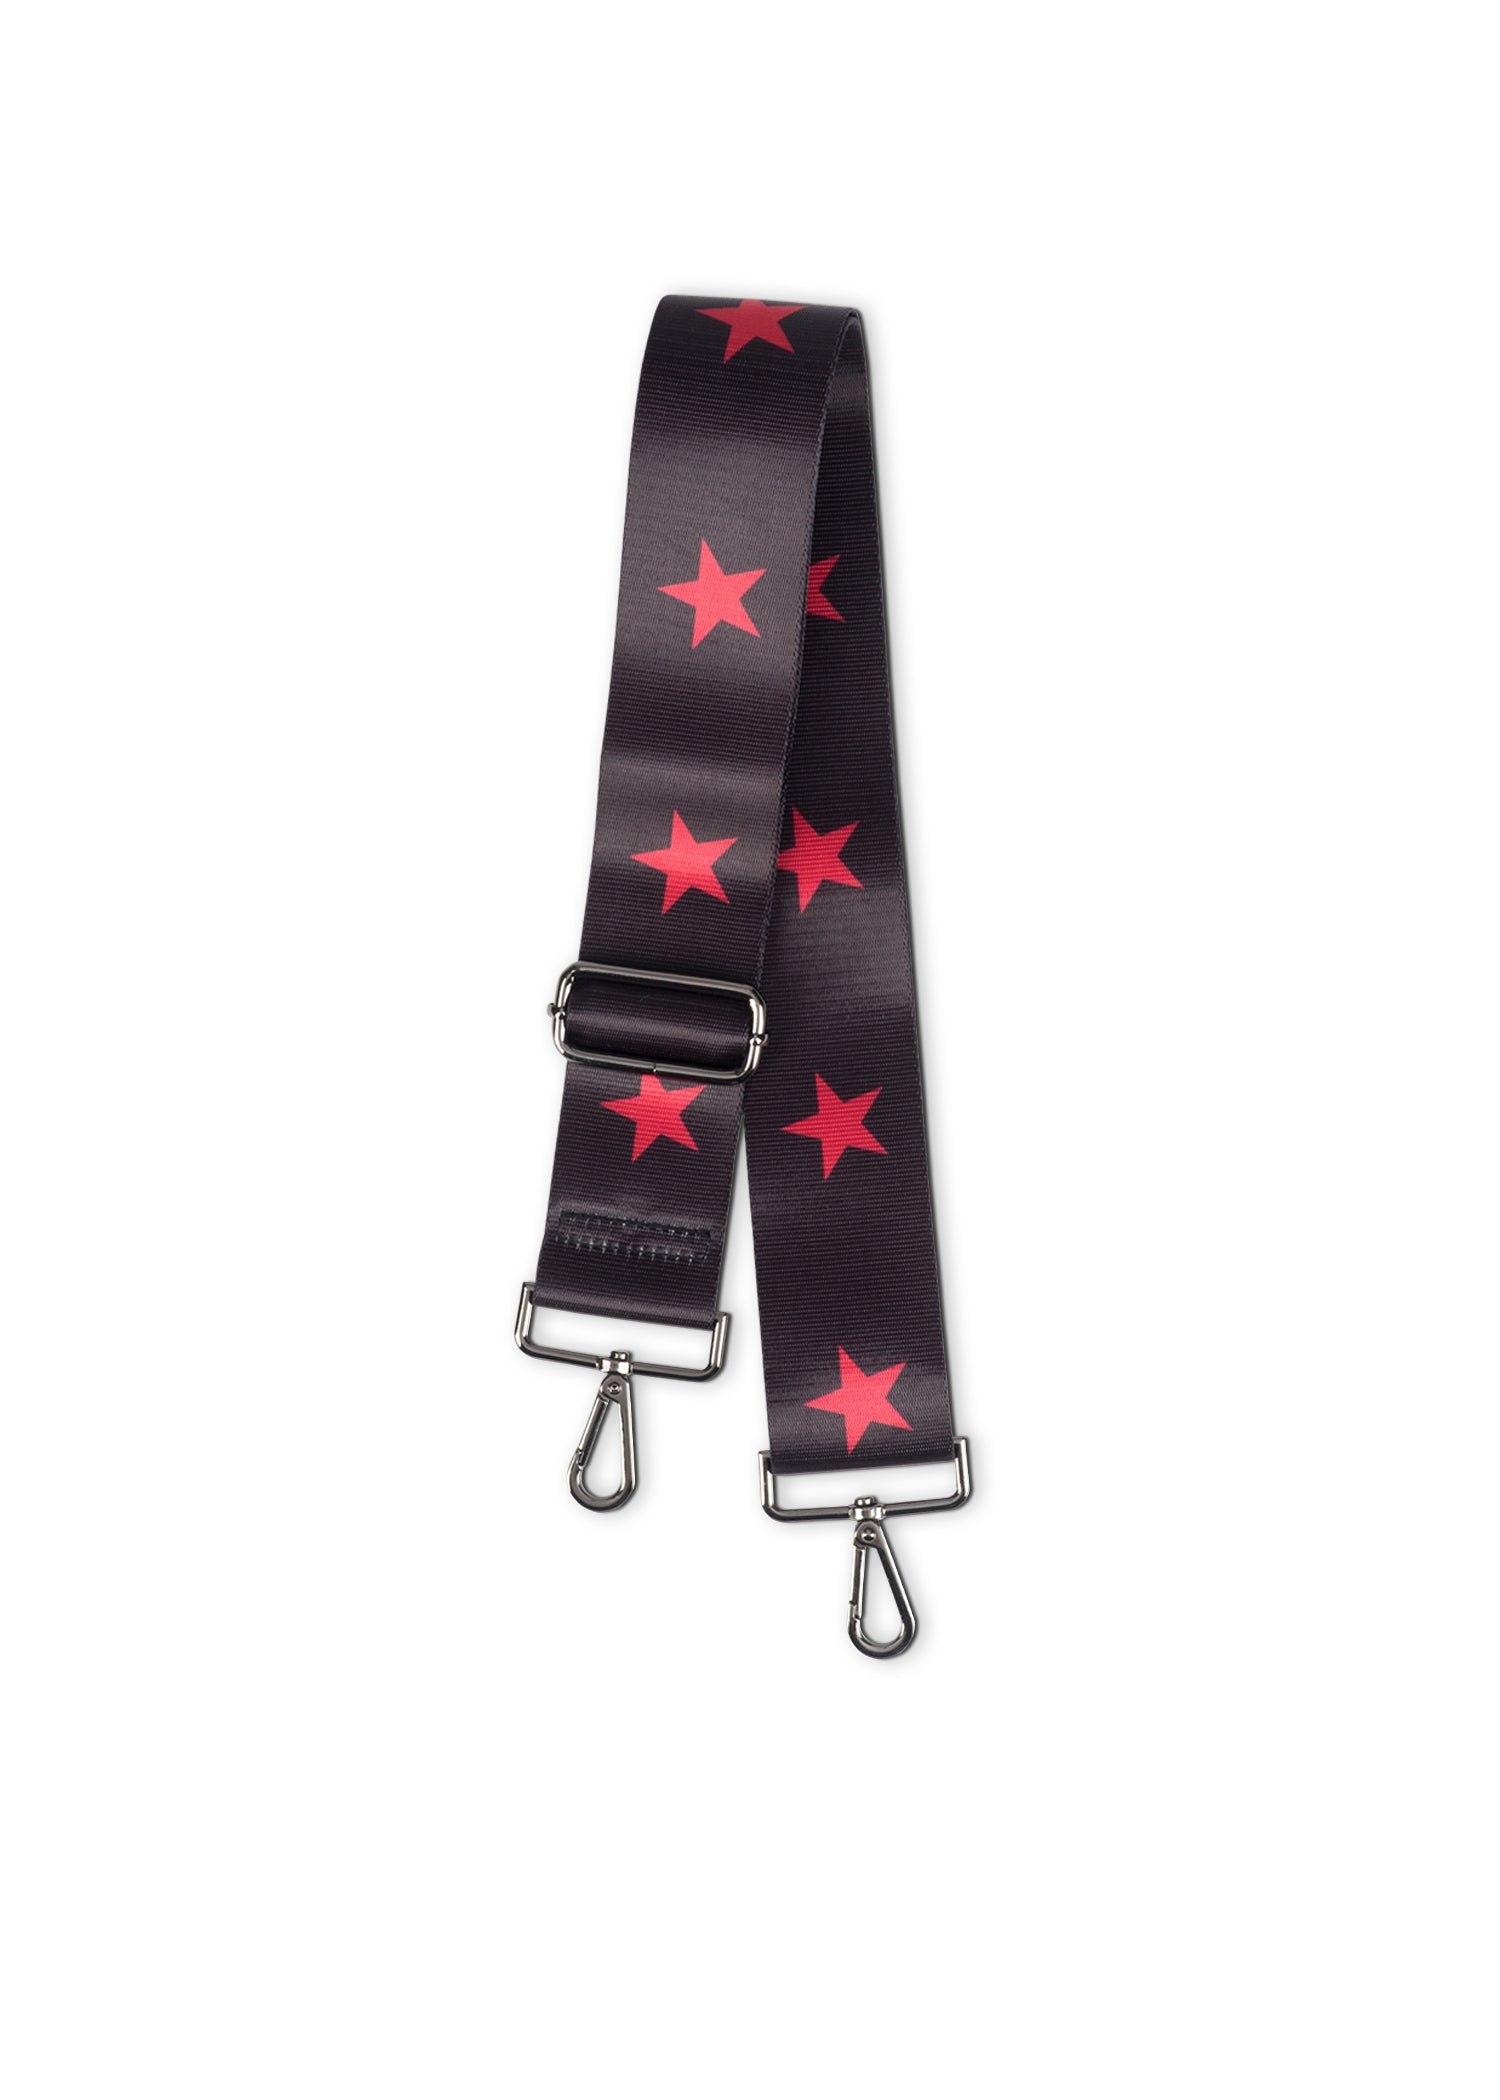 black/ red star handbag strap